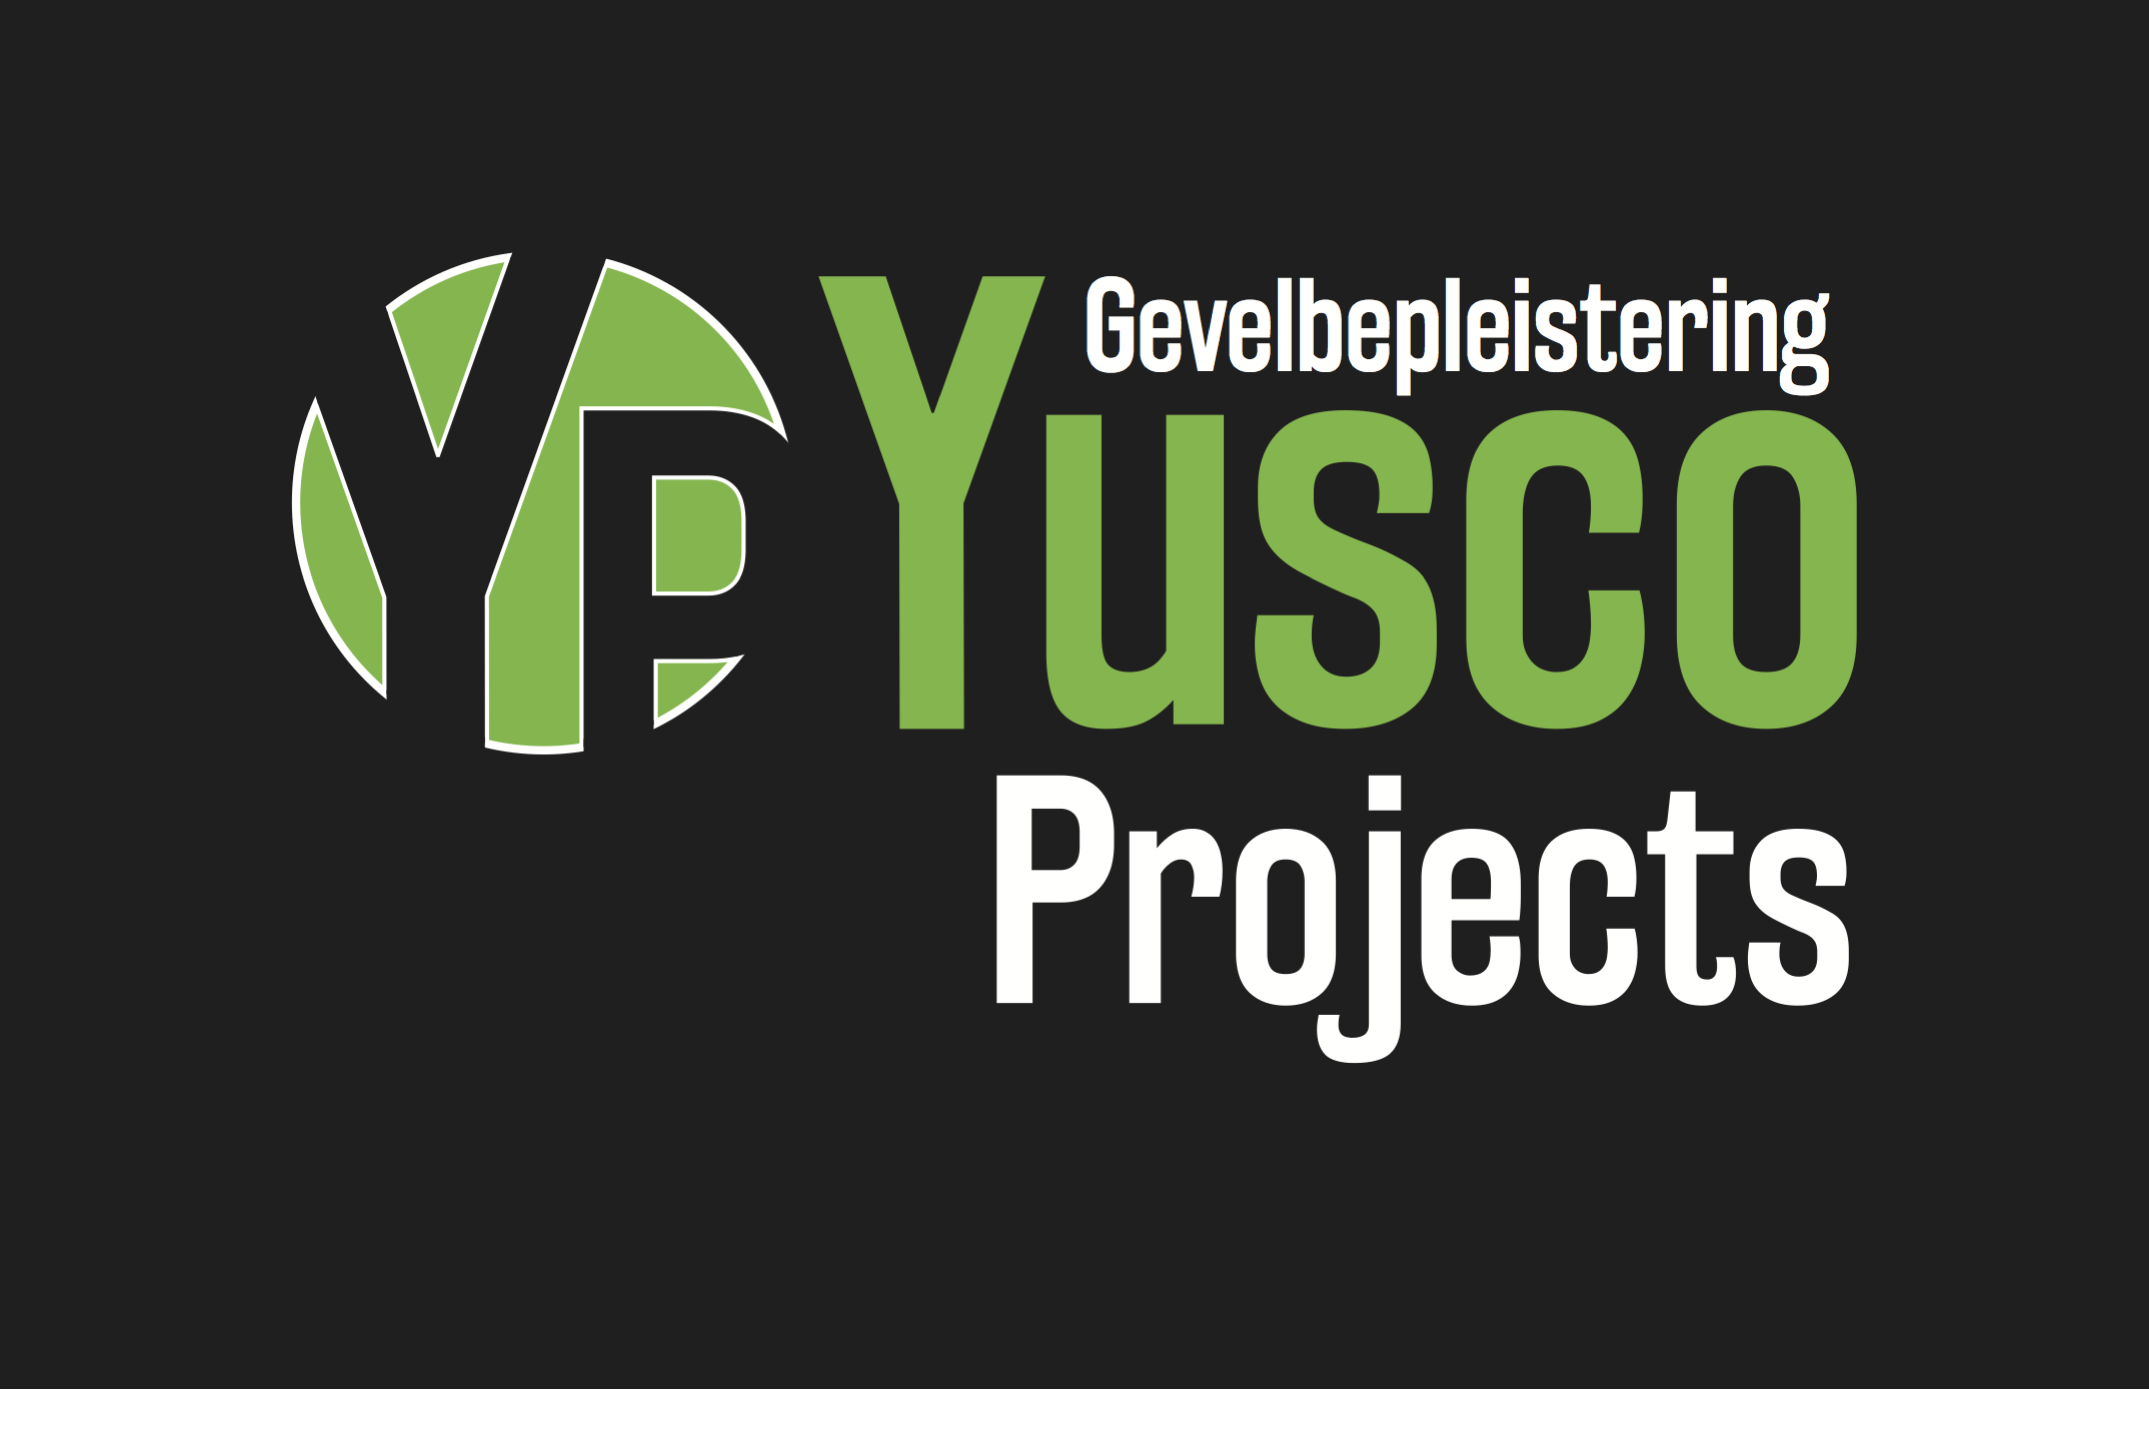 stukadoors Denderwindeke Yusco Projects Gevelbepleistering